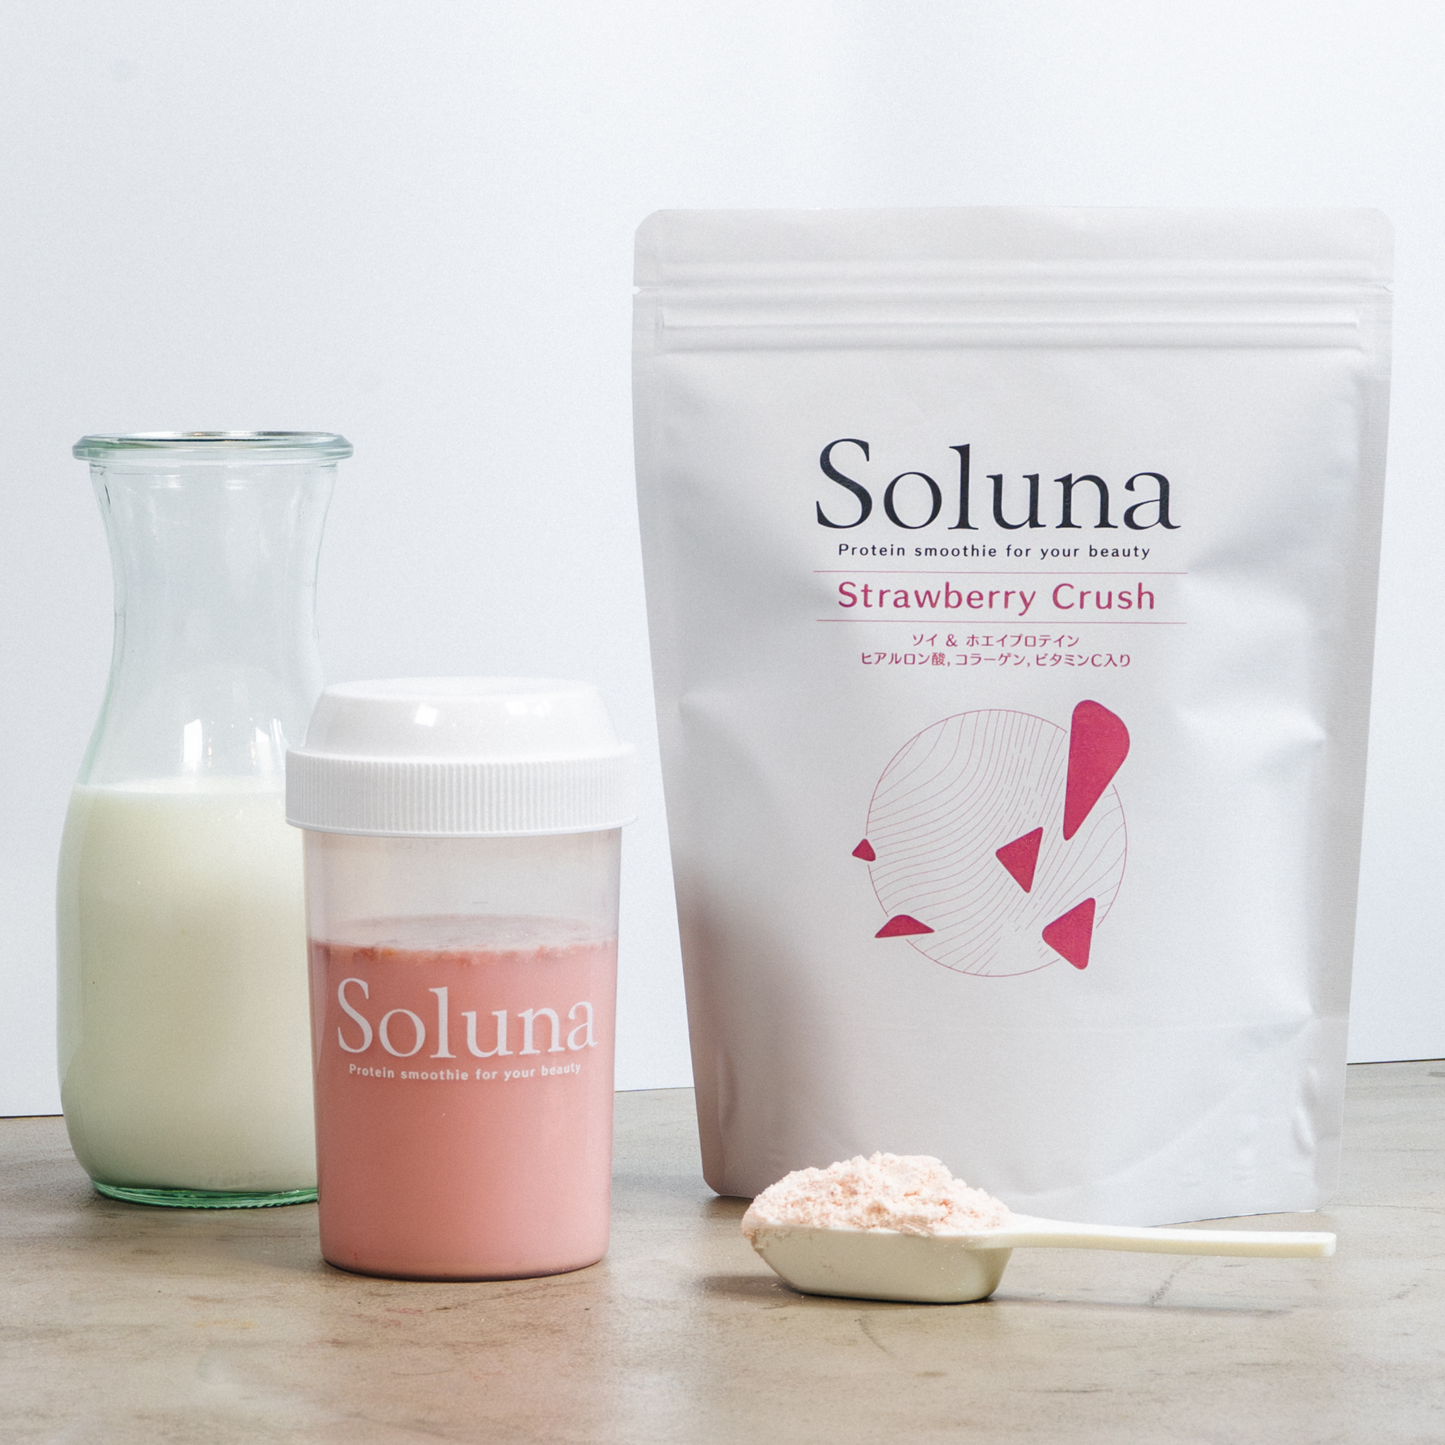 【定期購入】Soluna Protein 3袋